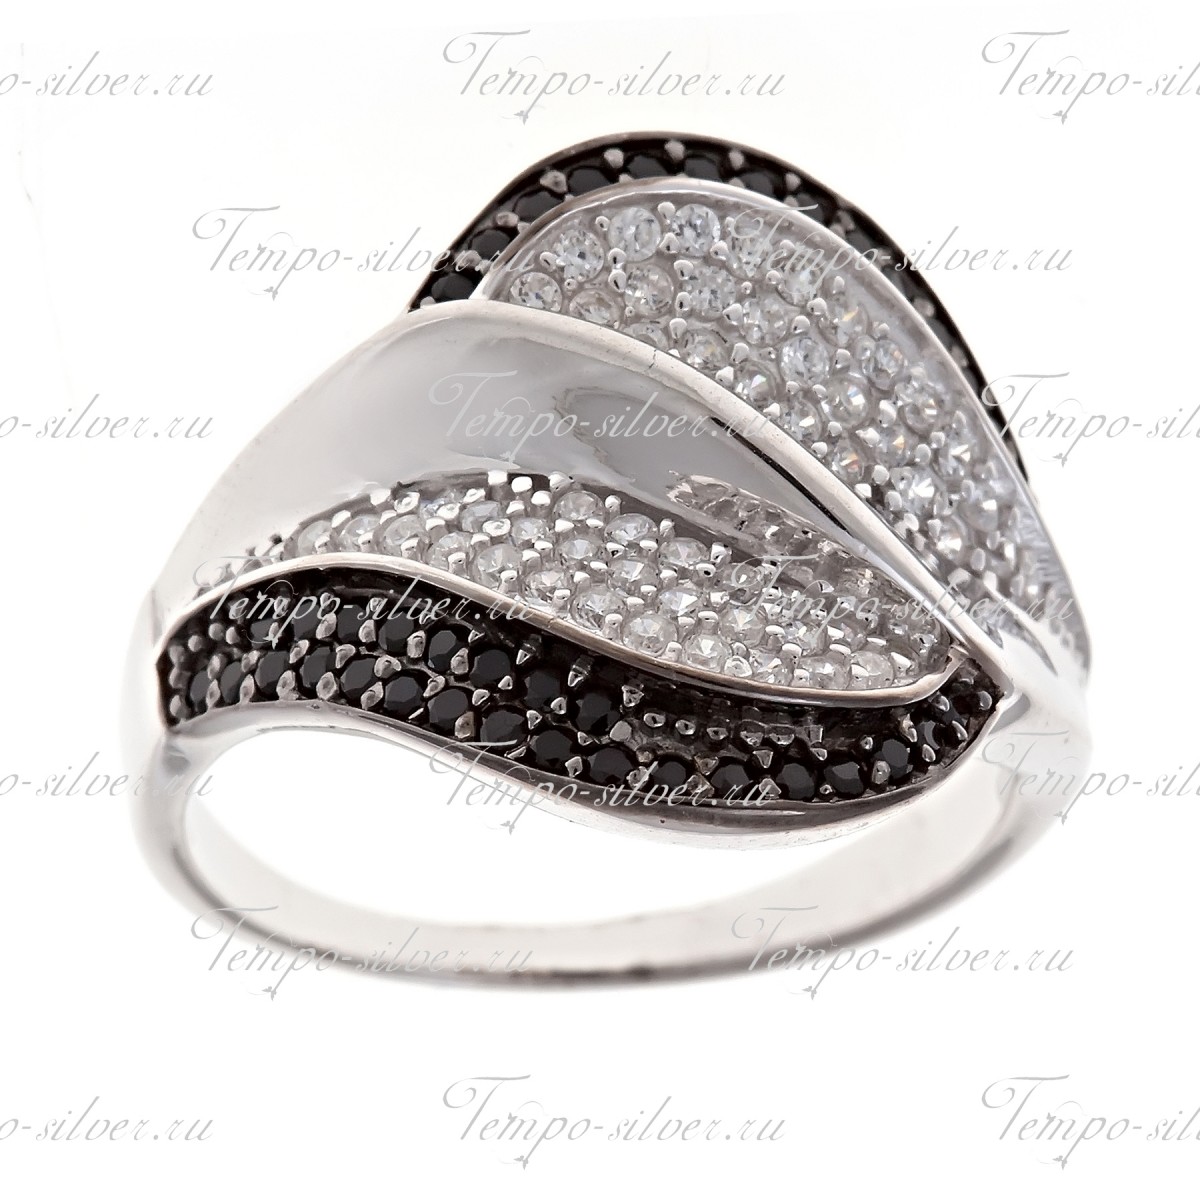 Кольцо из серебра широкой формы с волнообразными дорожками из черно-белых камней цена